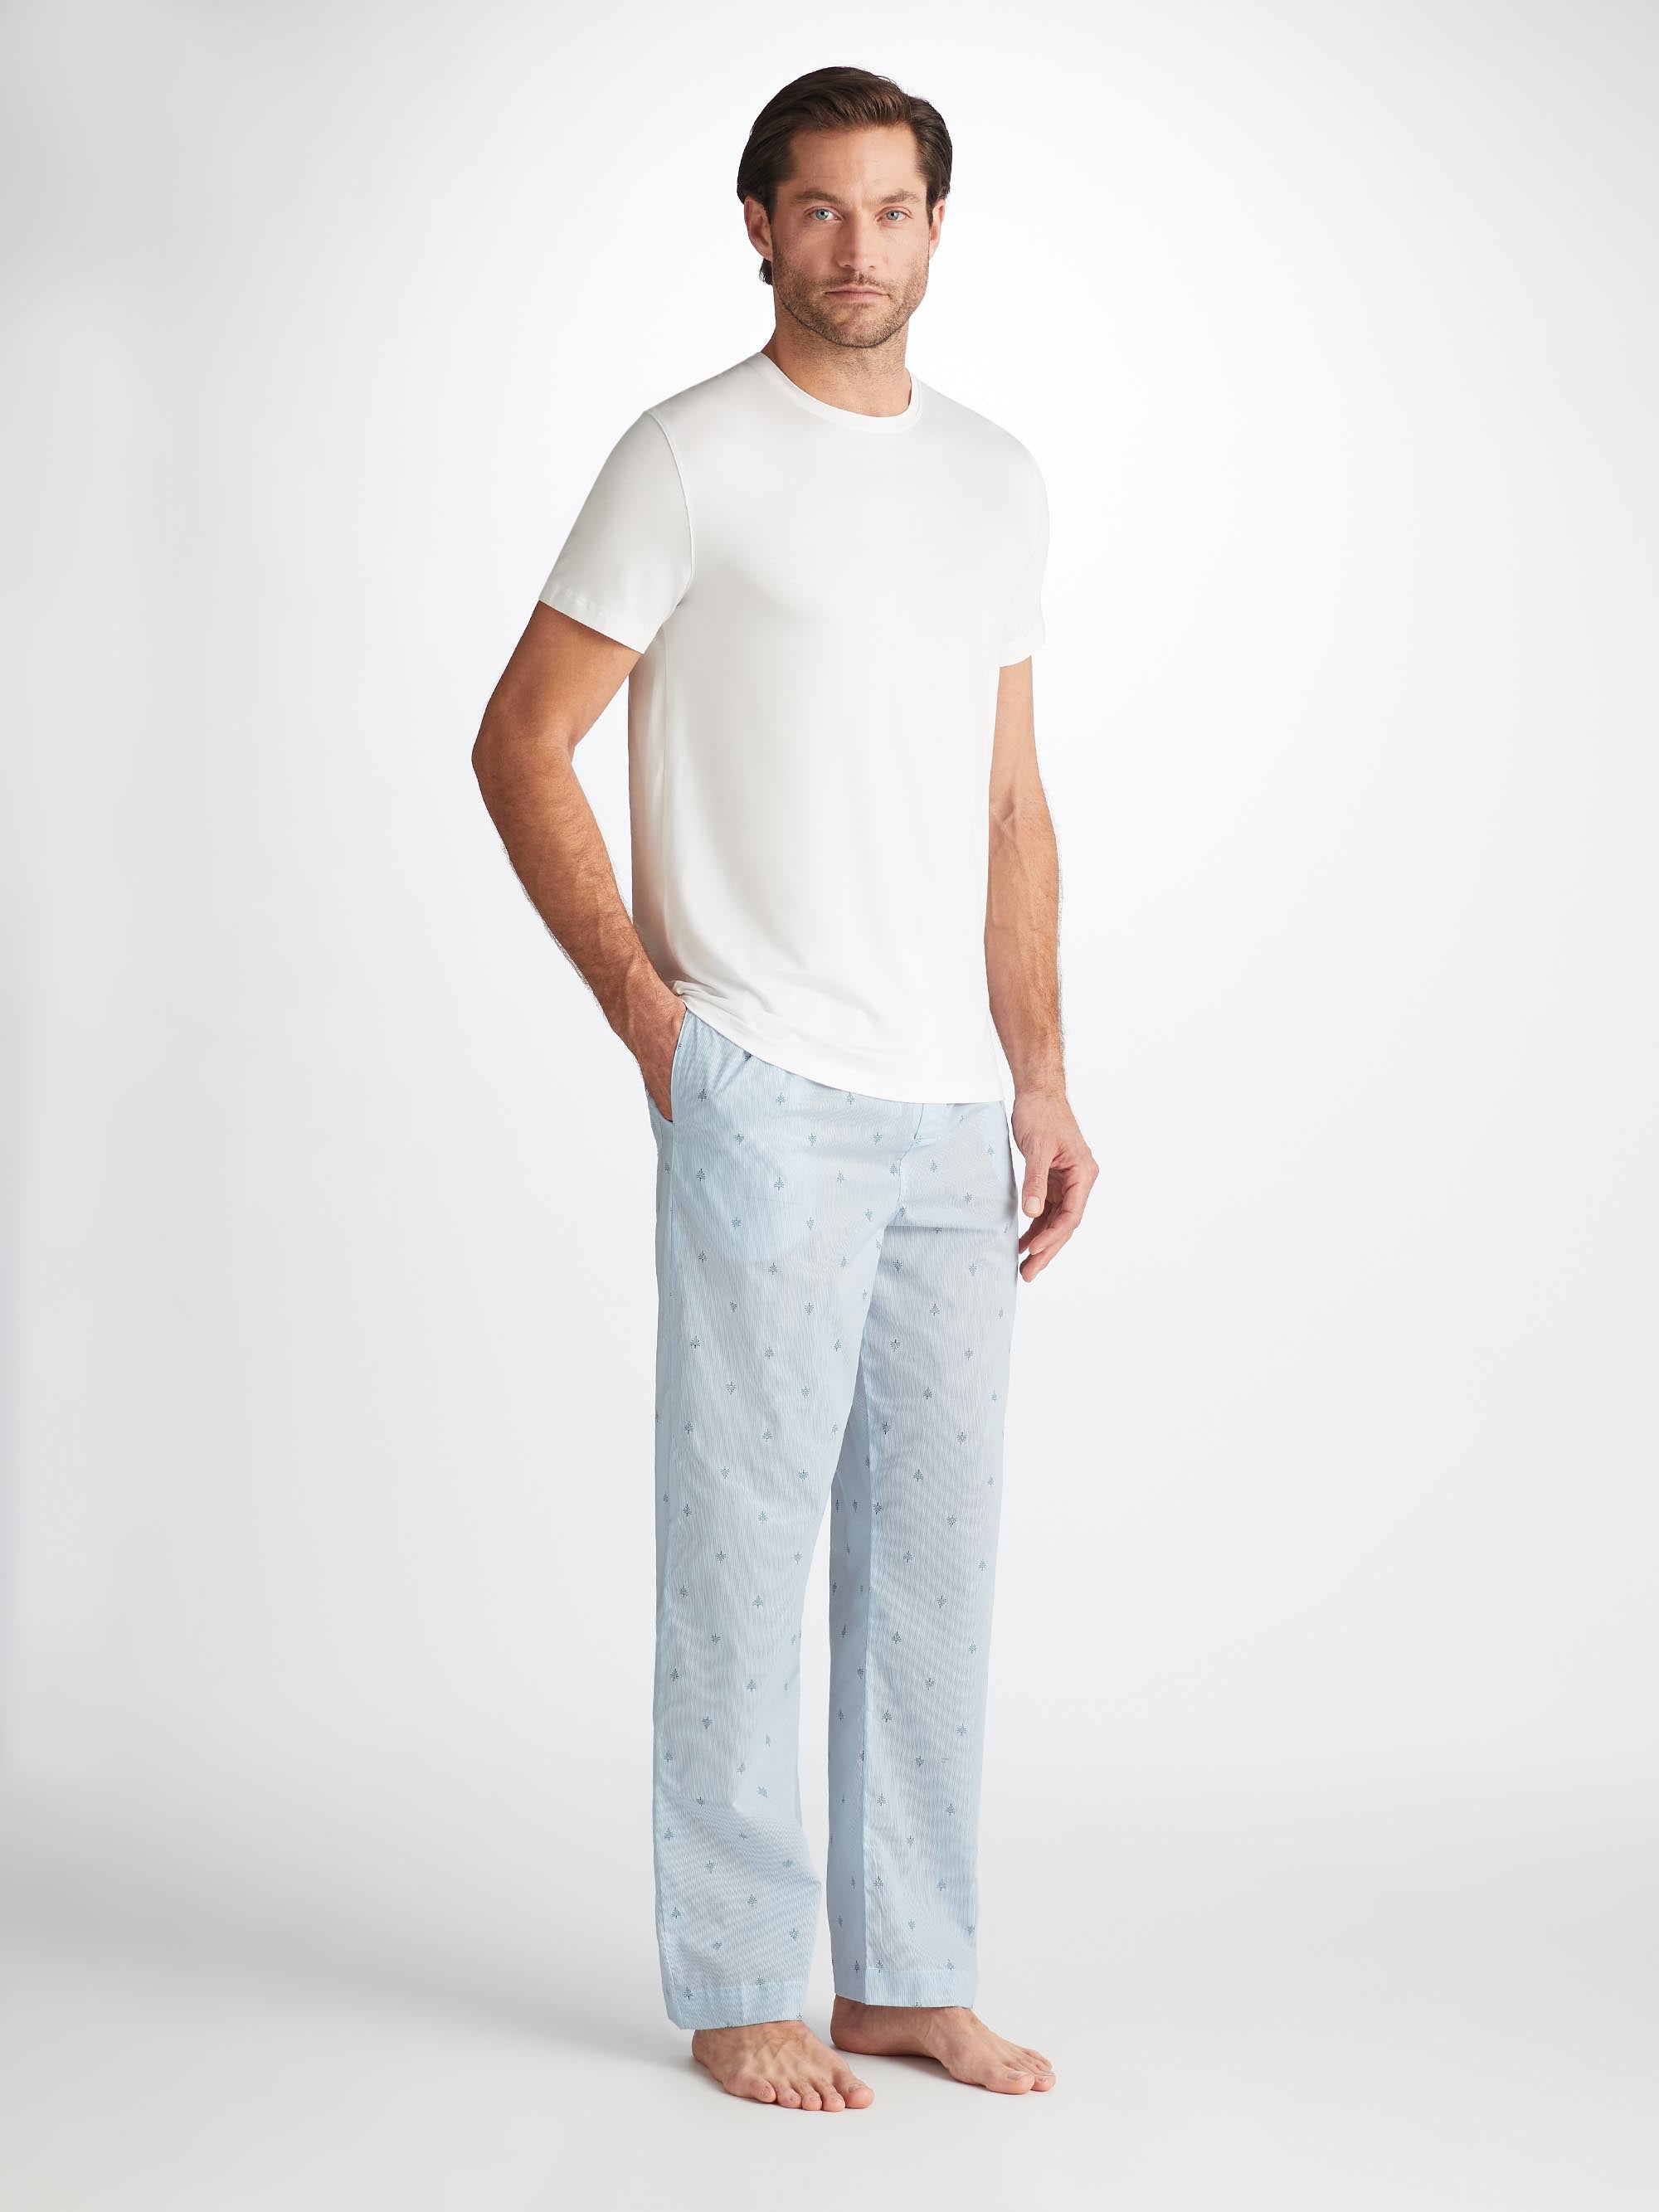 Men's Lounge Trousers Nelson 100 Cotton Batiste Blue